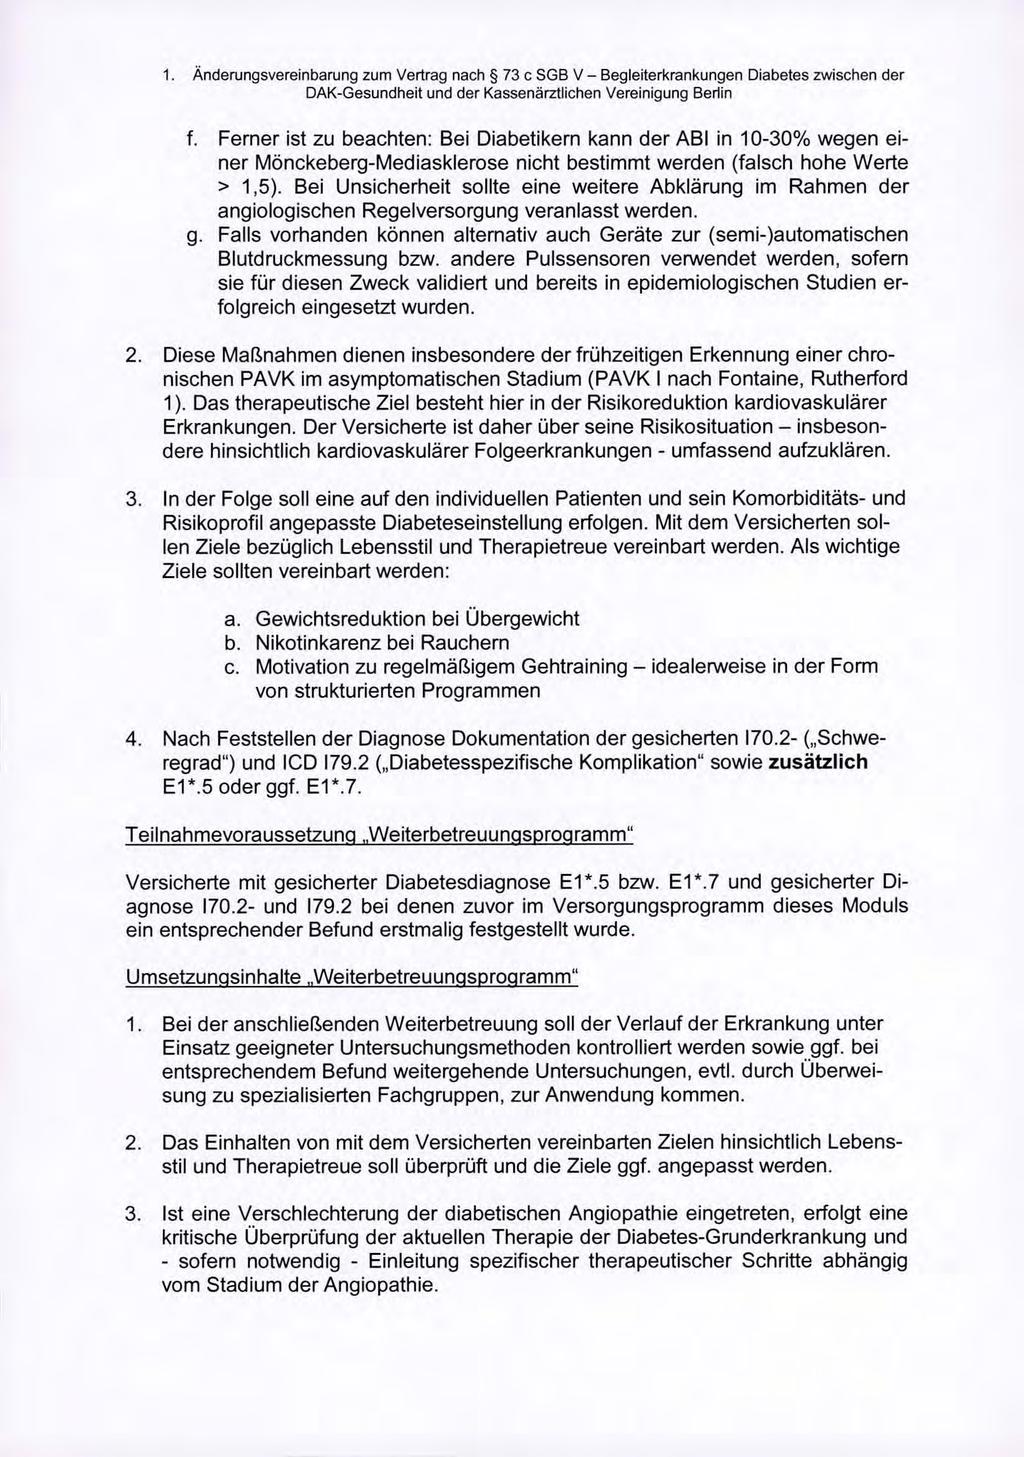 1. Änderungsvereinbarung zum Vertrag nach S 73 c 5GB V - Begleiterkrankungen Diabetes zwischen der DAK-Gesundheit und der Kassenärztlichen Vereinigung Berlin f.